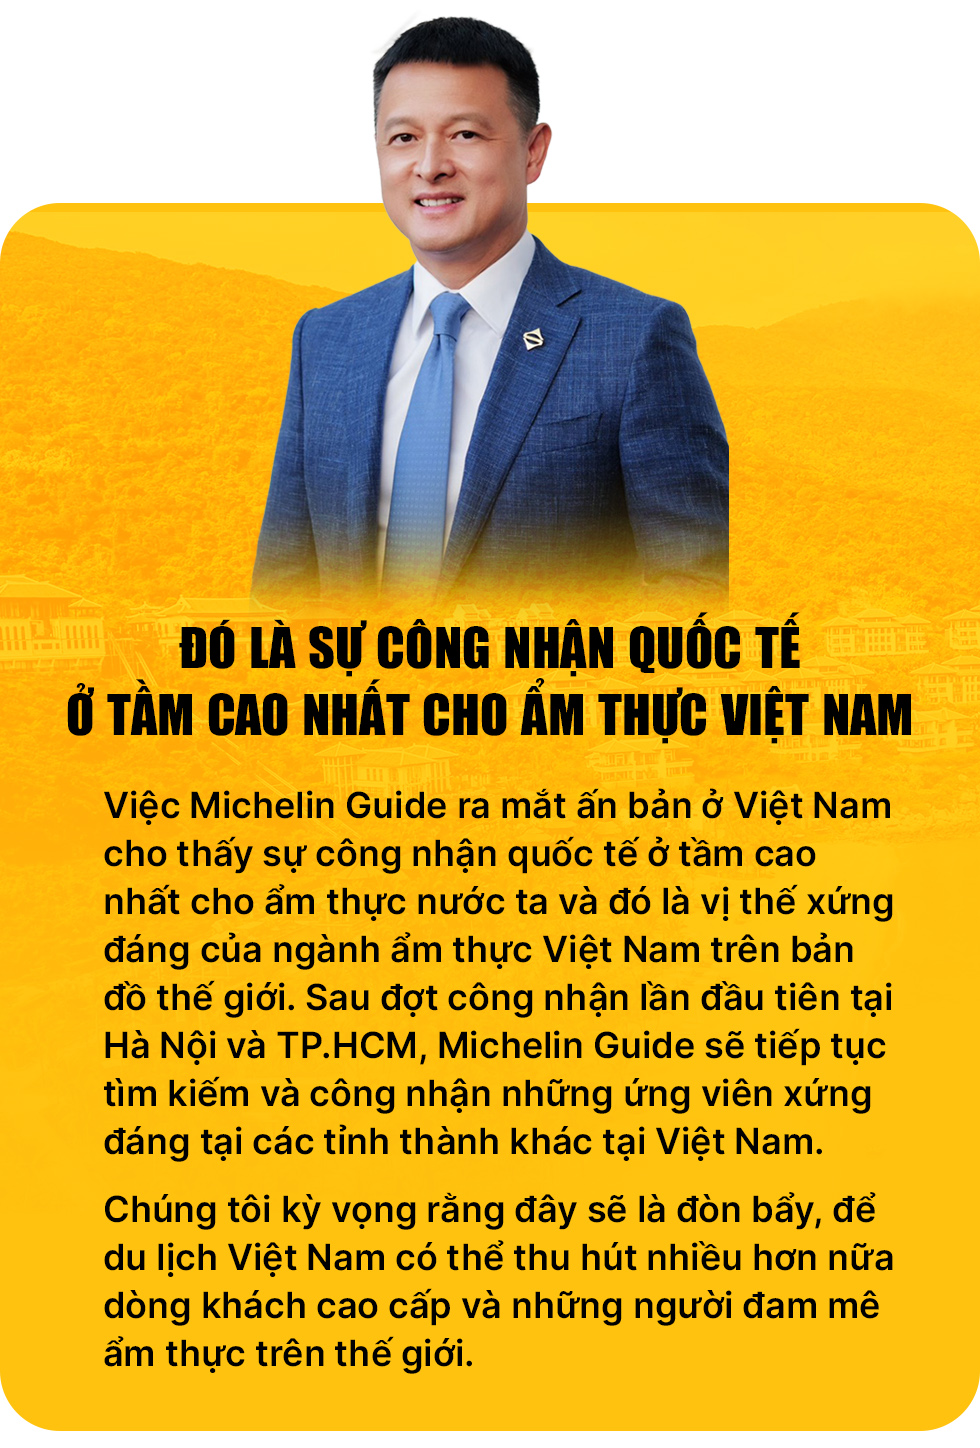 Ông Đặng Minh Trường, Chủ tịch HĐQT Tập đoàn Sun Group: Đưa nước Việt Nam rời khỏi thế giới- đem trái đất cho tới nước Việt Nam - Hình ảnh 11.